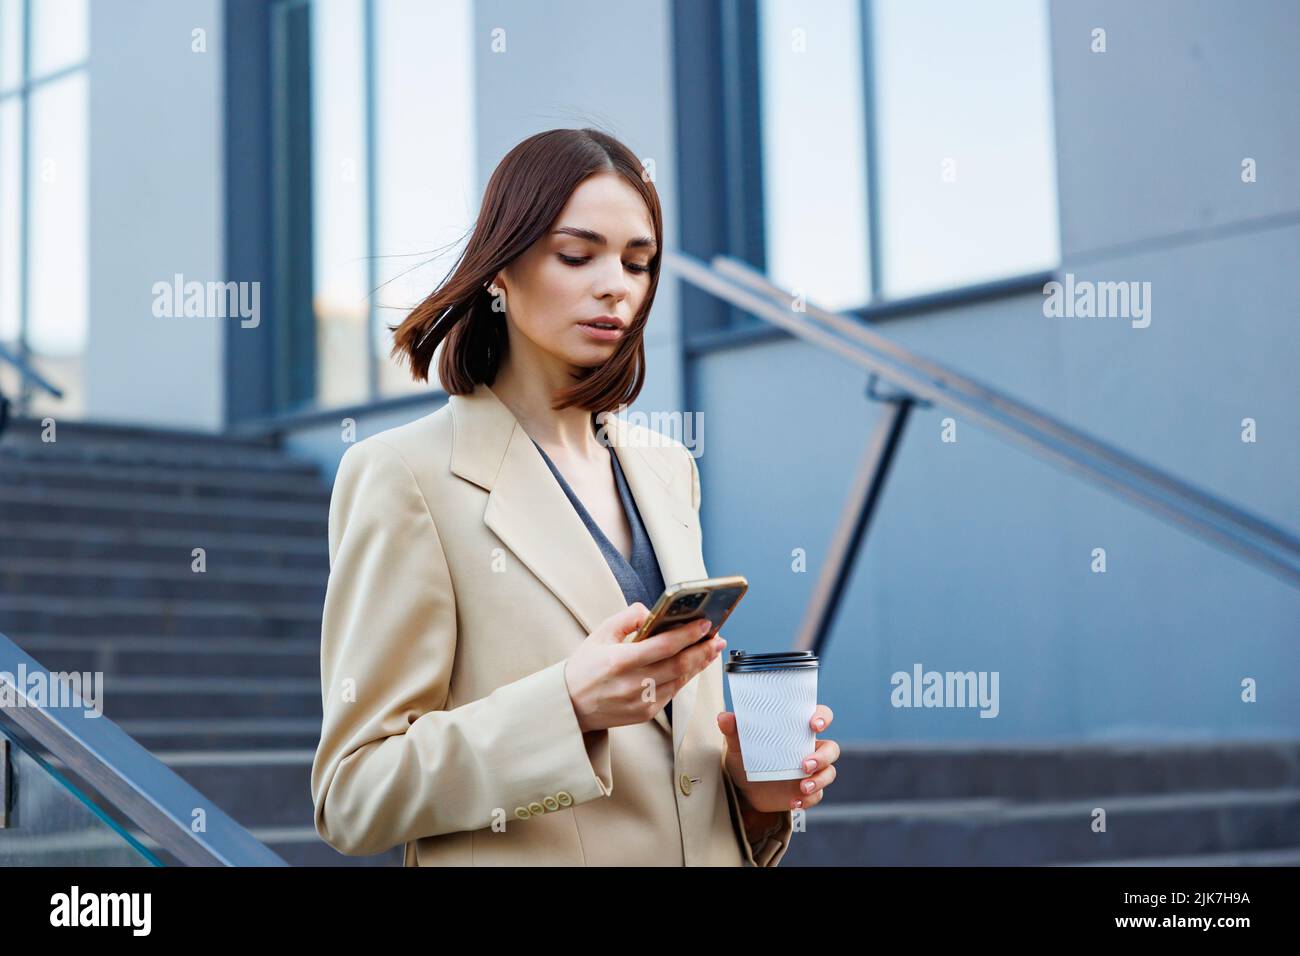 Una joven morena con el telón de fondo de un centro de negocios, centro de oficinas. Mientras se desplaza, lee las noticias desde su smartphone. Foto de stock